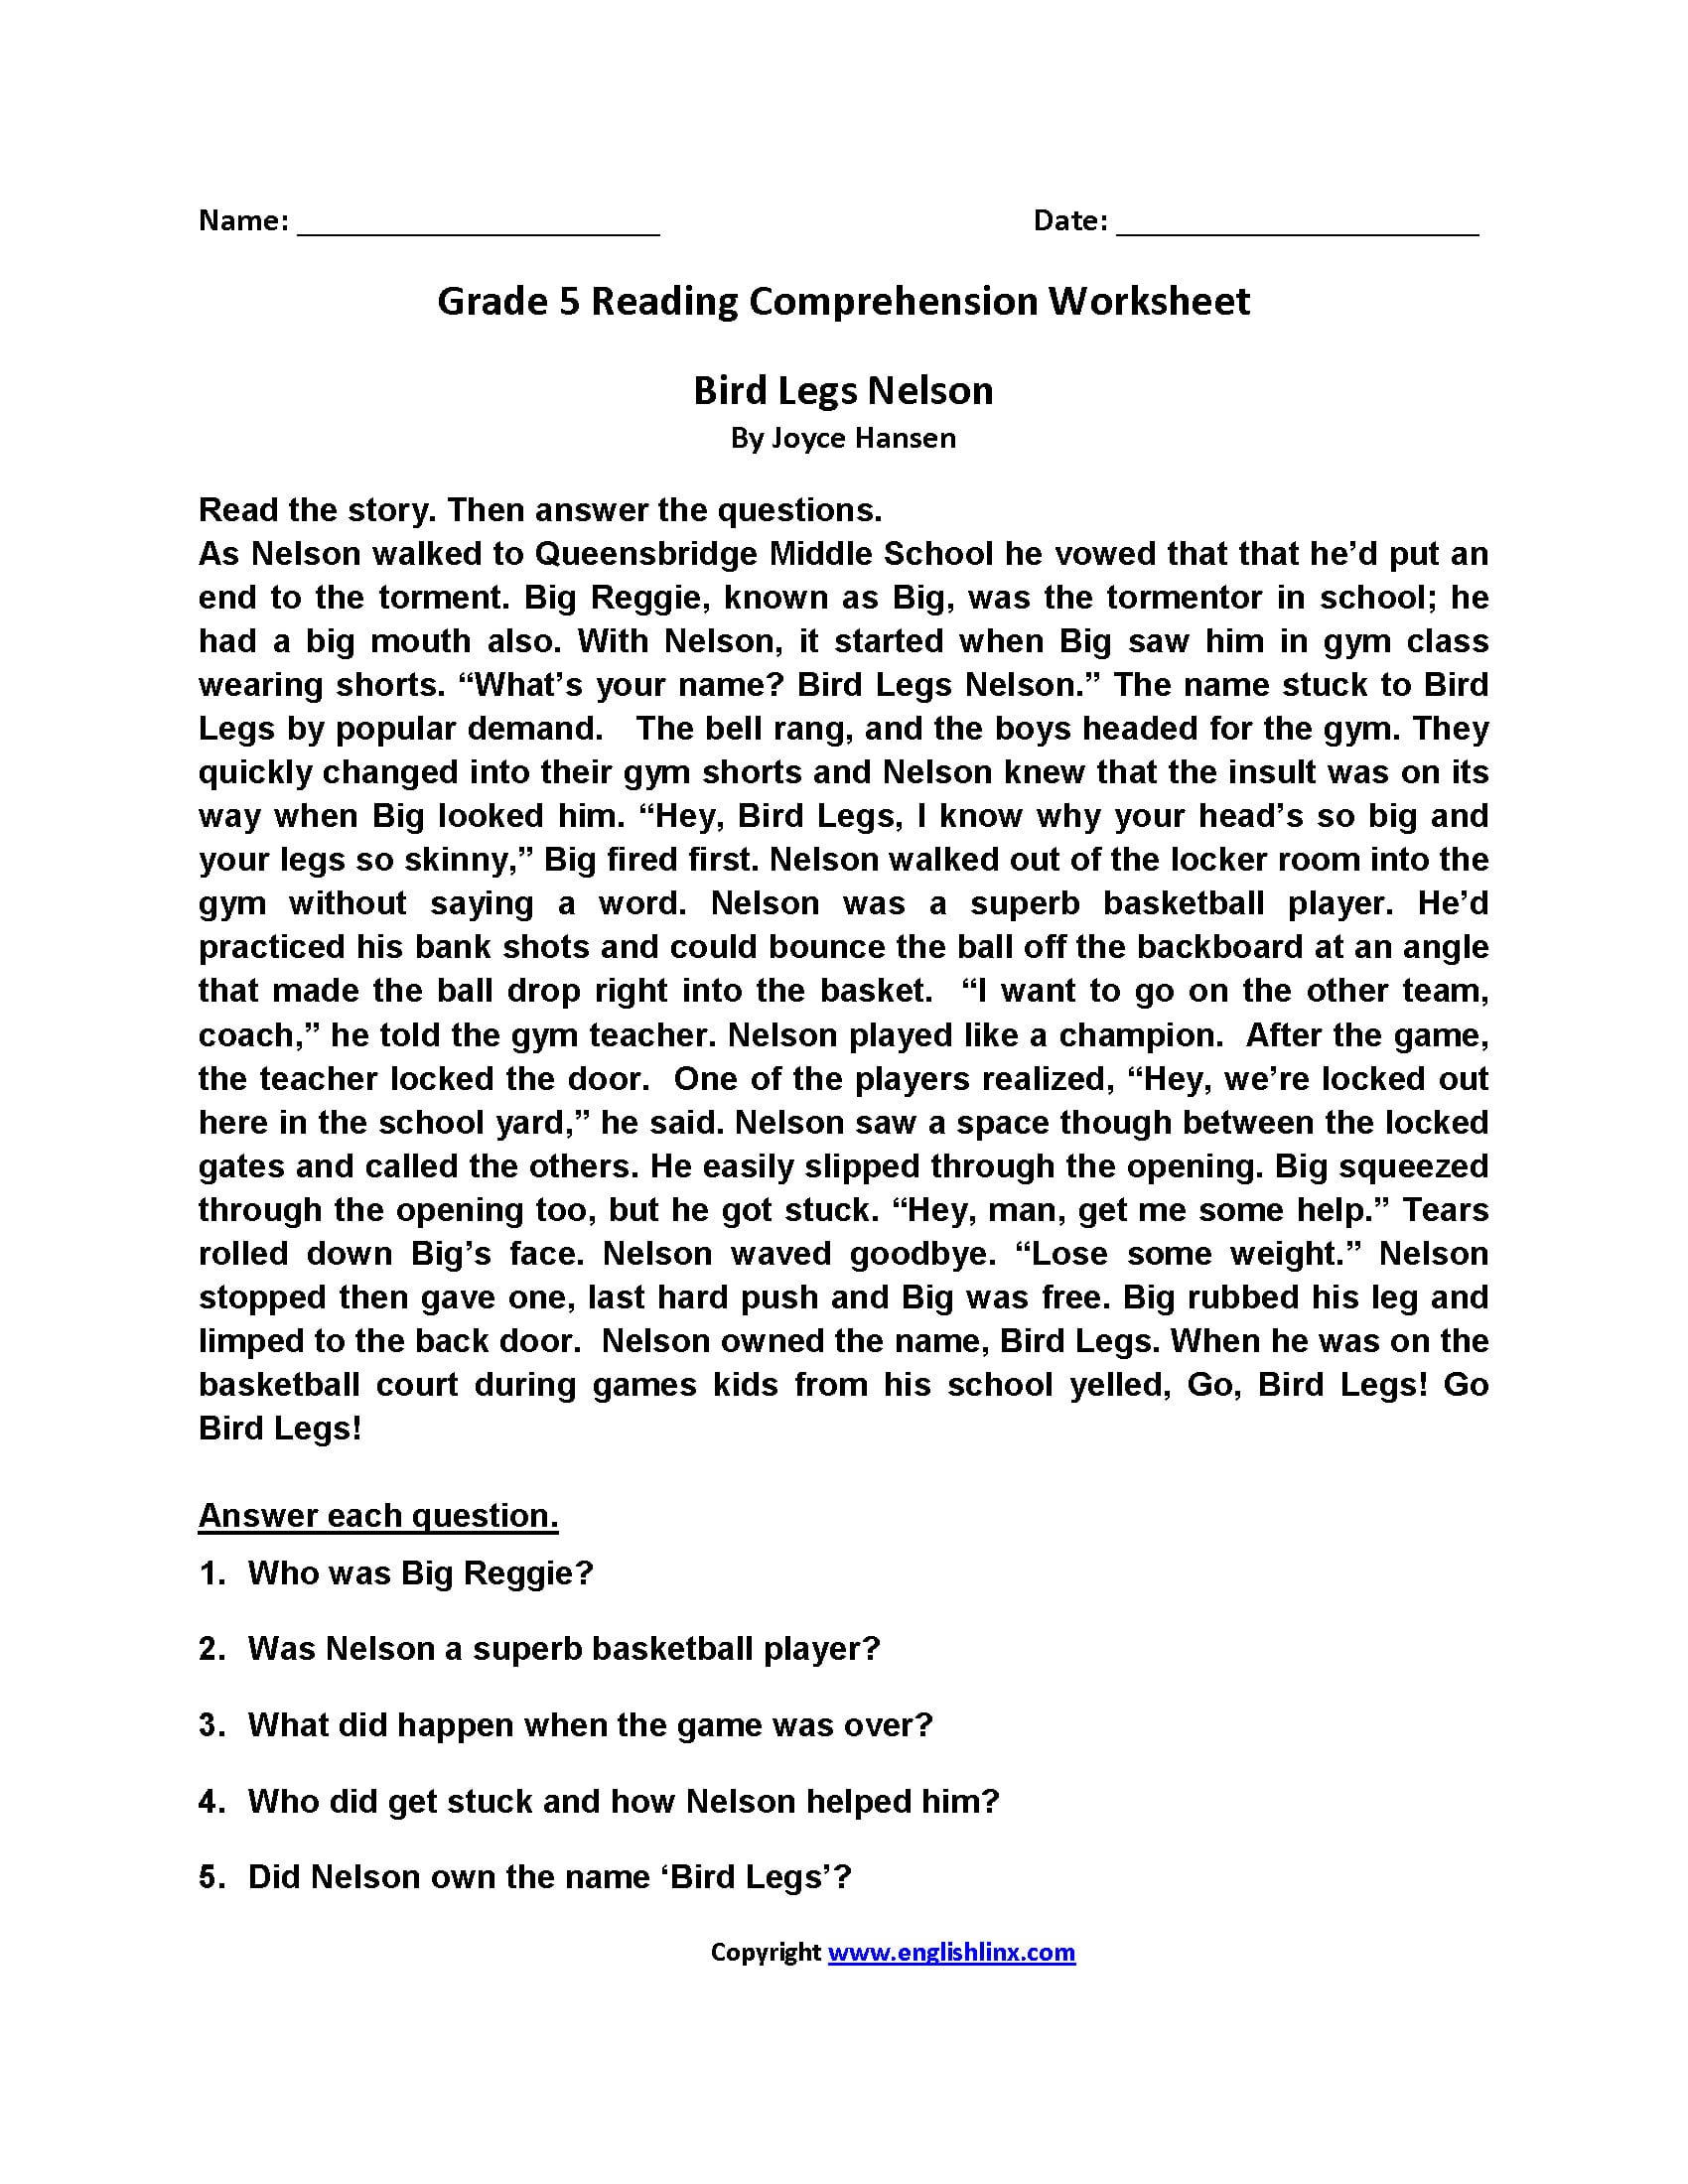 grade 5 reading comprehension worksheets pdf db excelcom